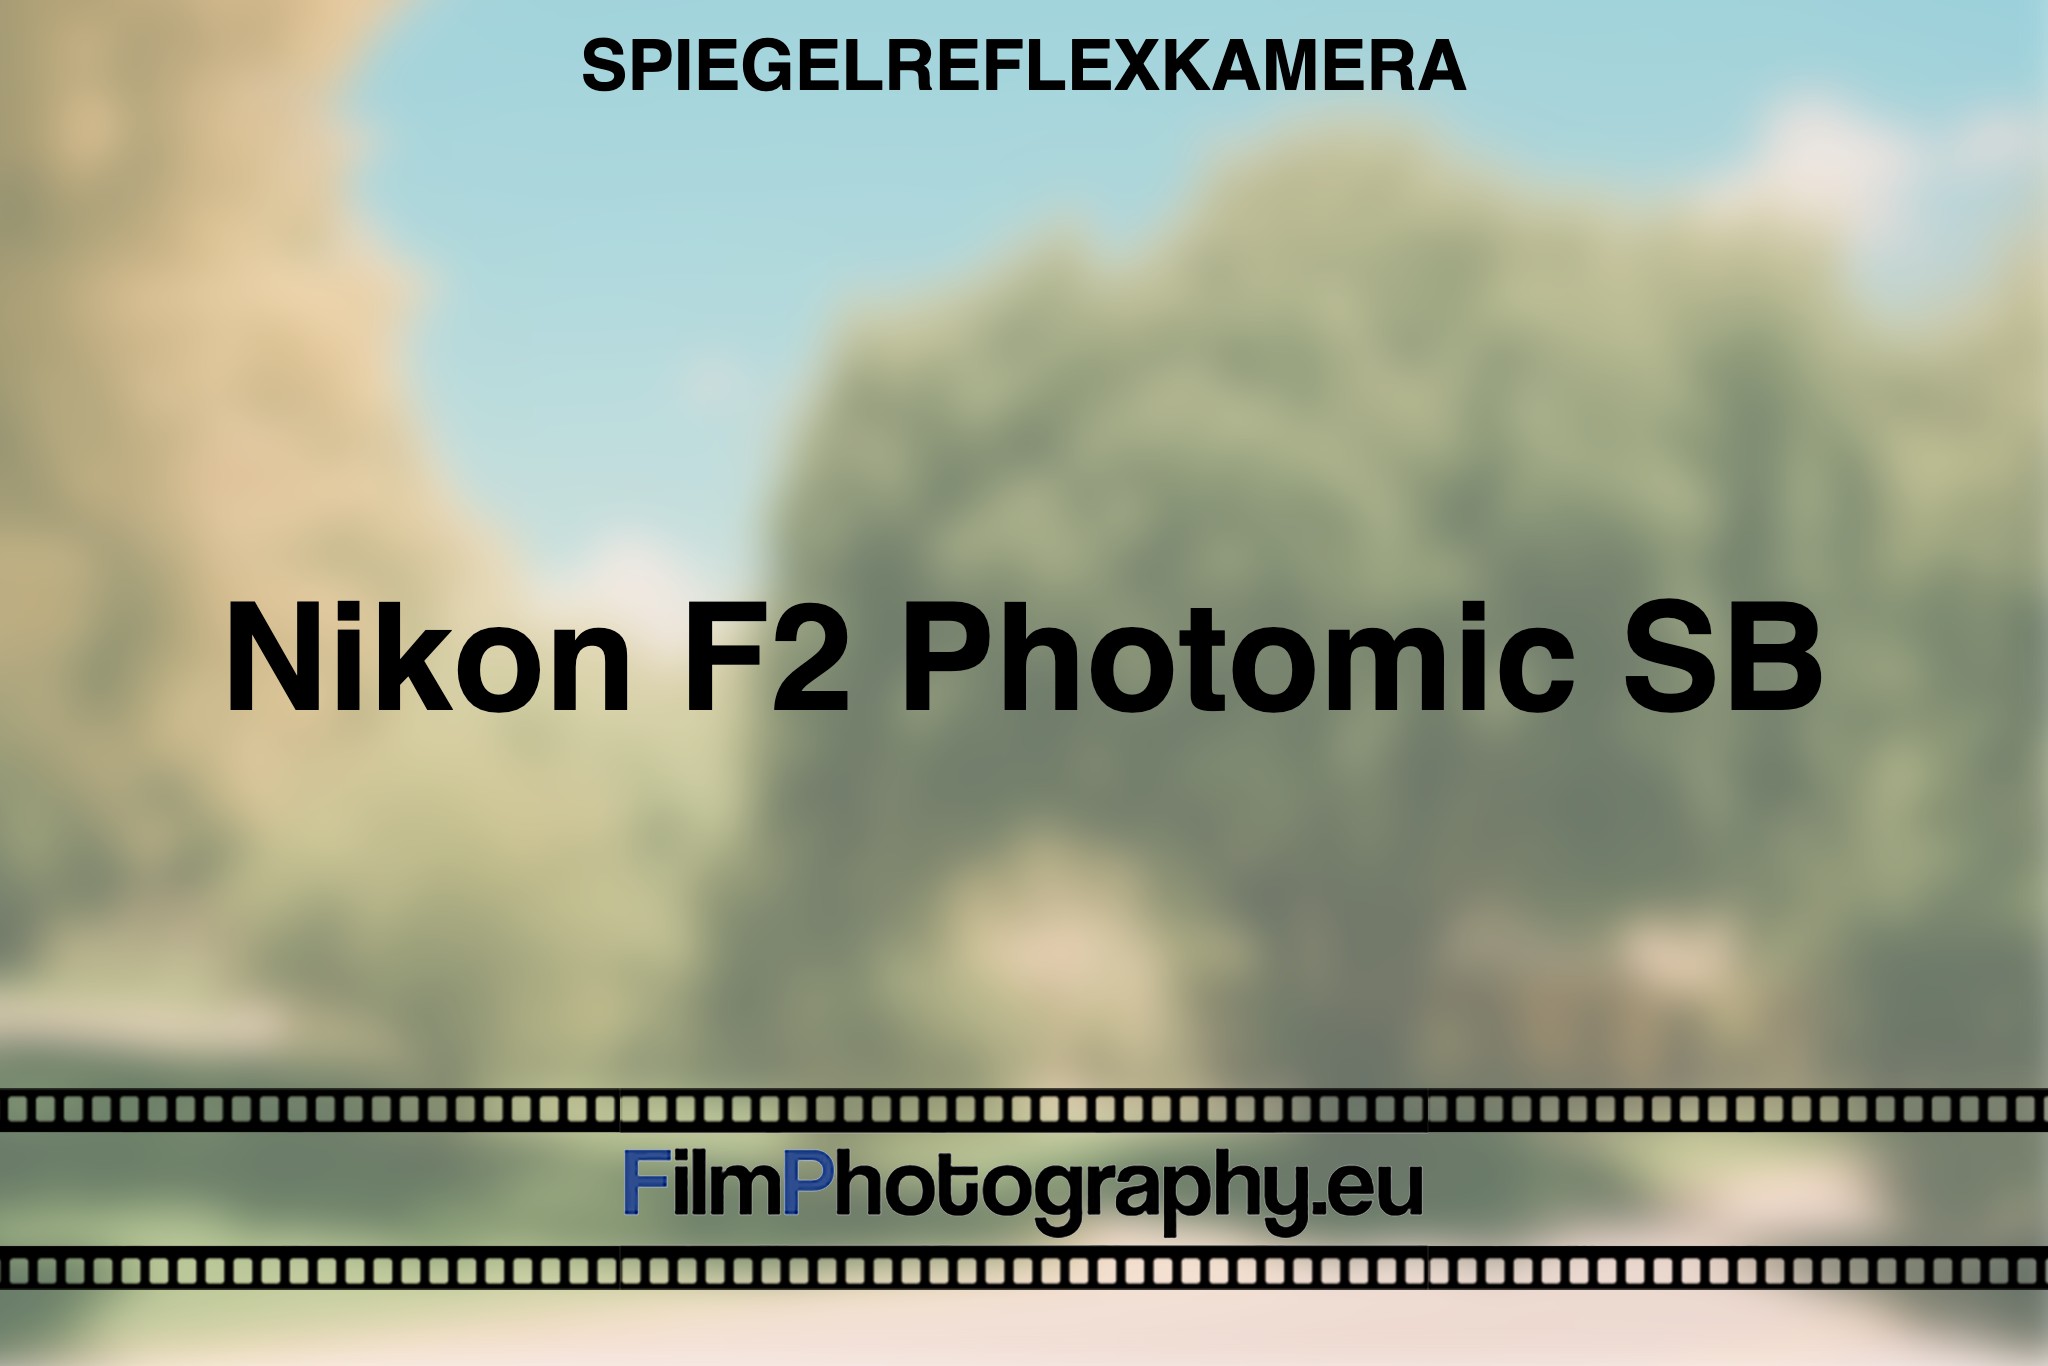 nikon-f2-photomic-sb-spiegelreflexkamera-bnv